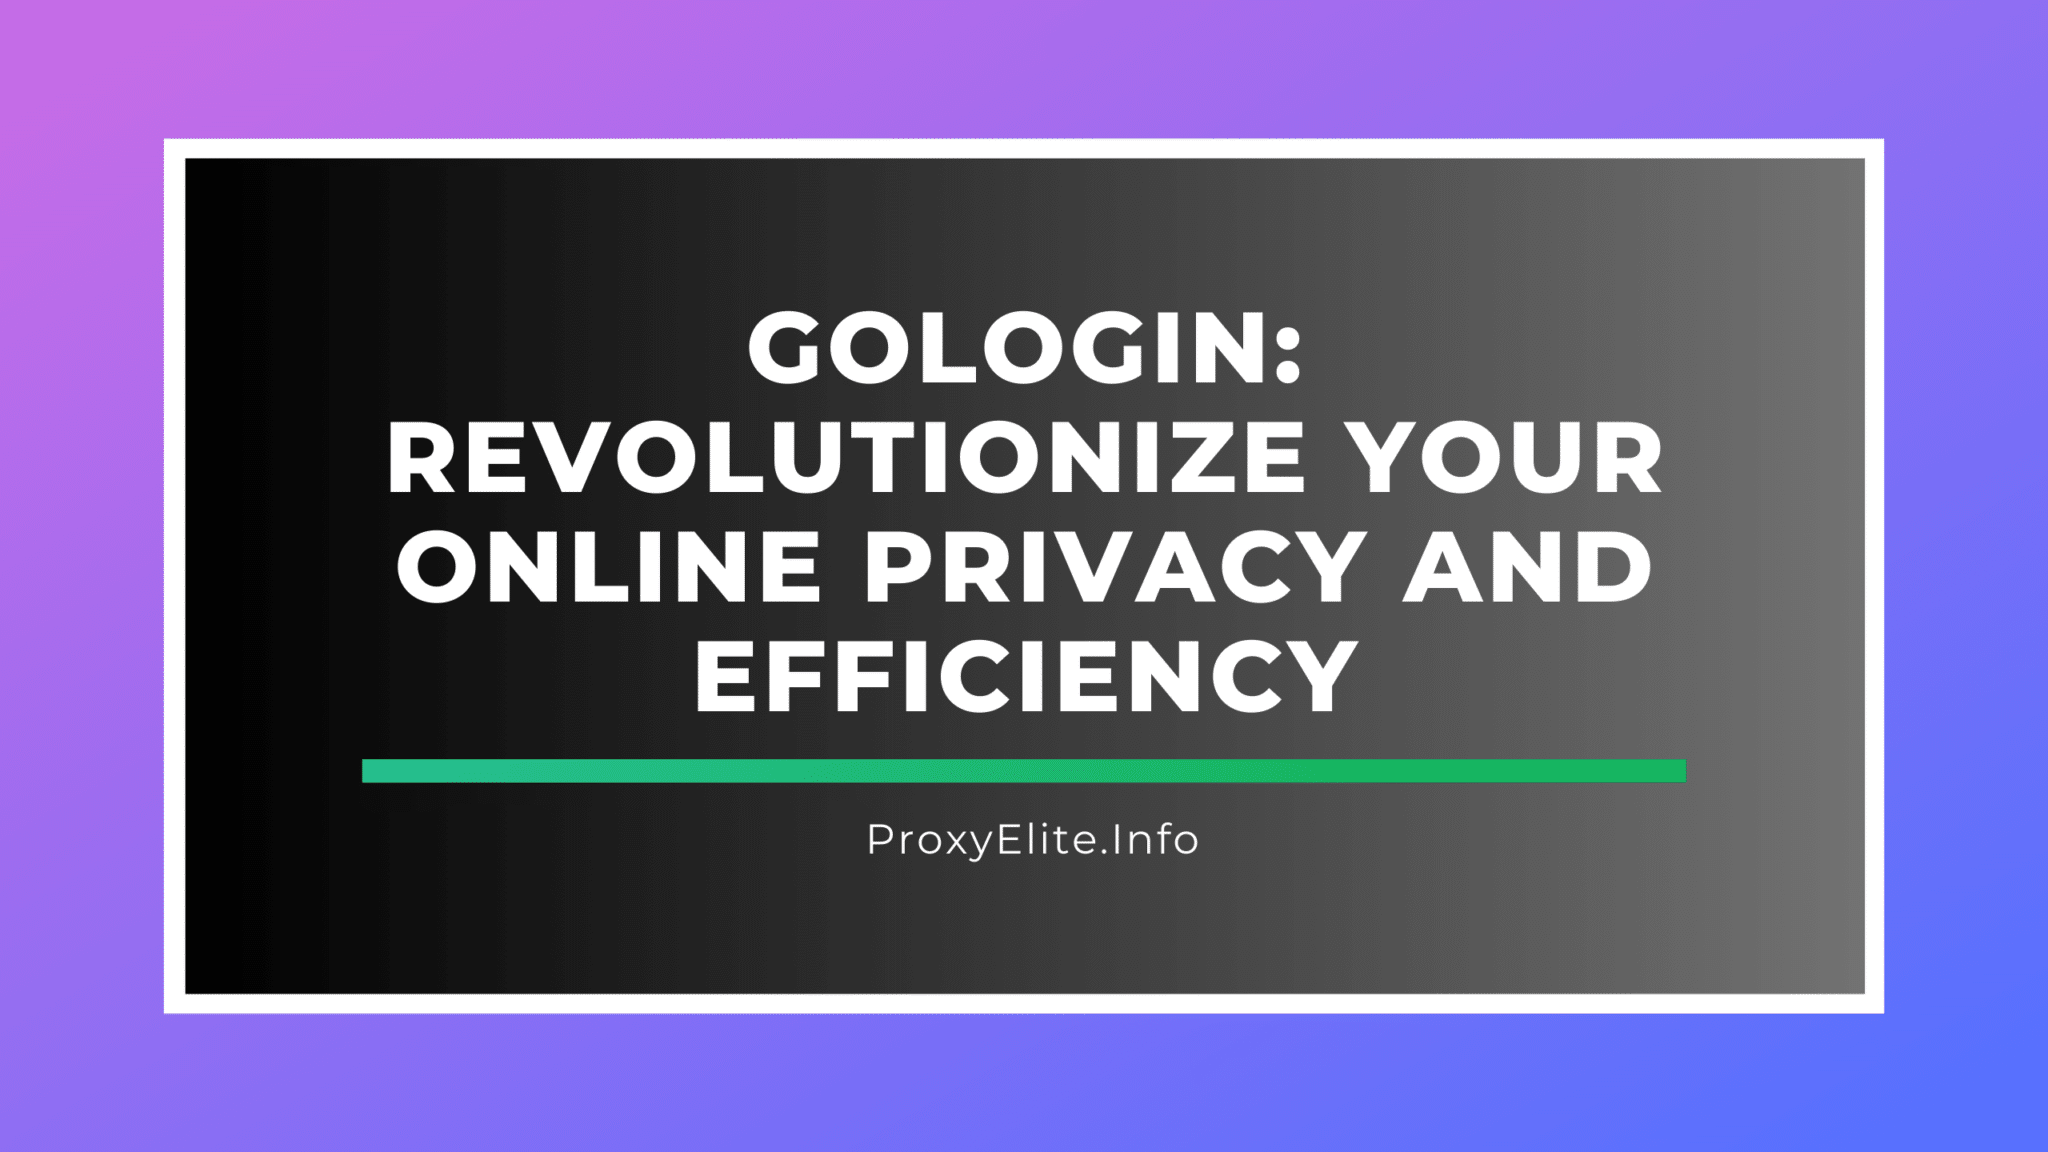 GoLogin: революционизируйте вашу конфиденциальность и эффективность в Интернете